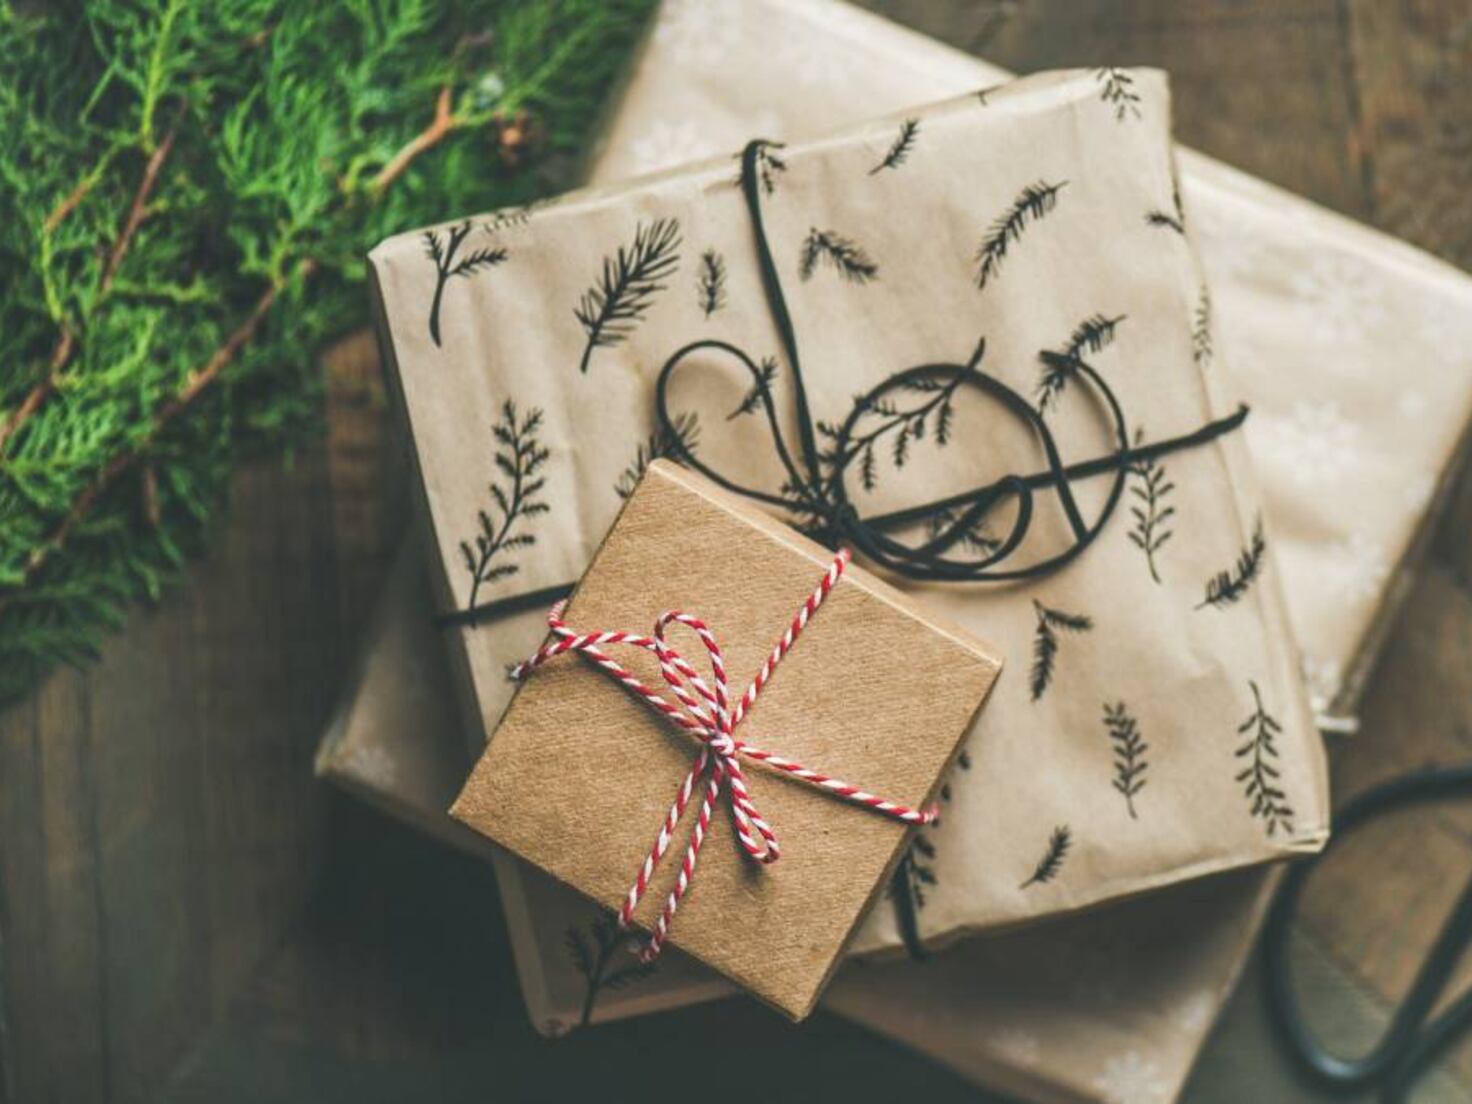 Los 10 regalos de Navidad perfectos para tu novio - Showroom